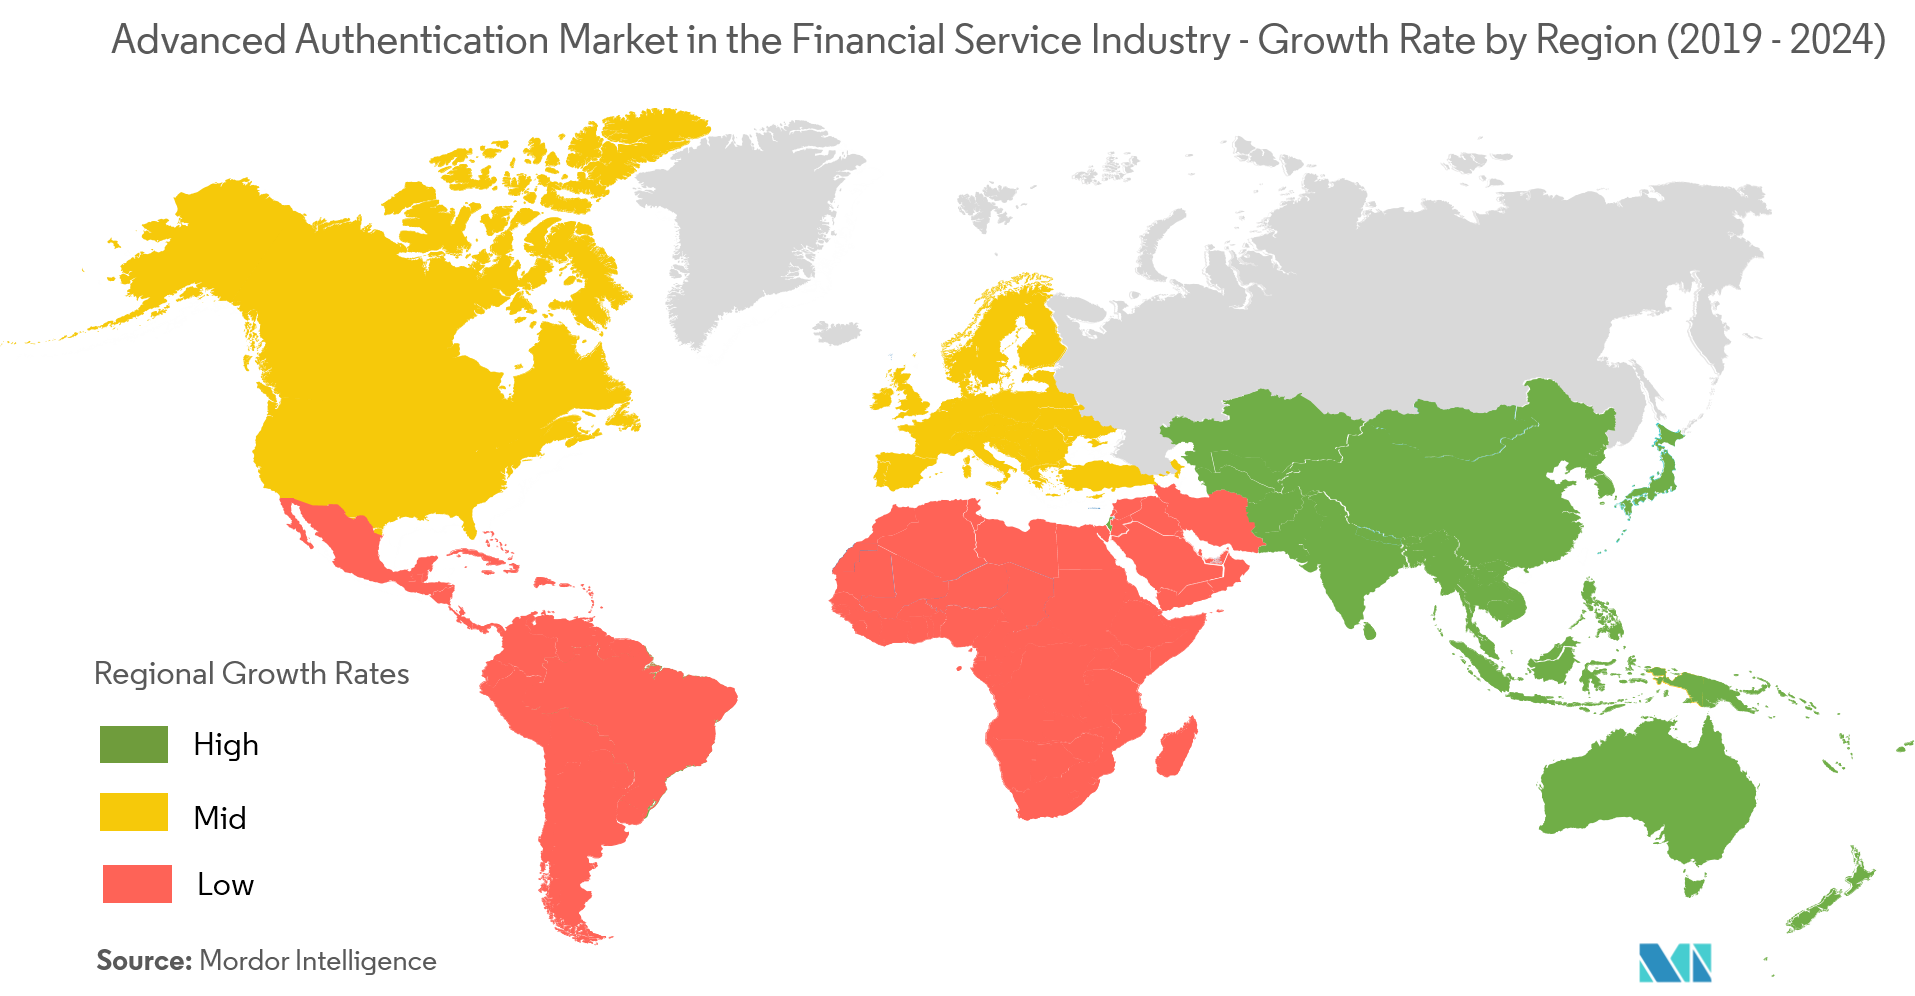 Рынок расширенной аутентификации в сфере финансовых услуг – темпы роста по регионам (2019-2024 гг.)